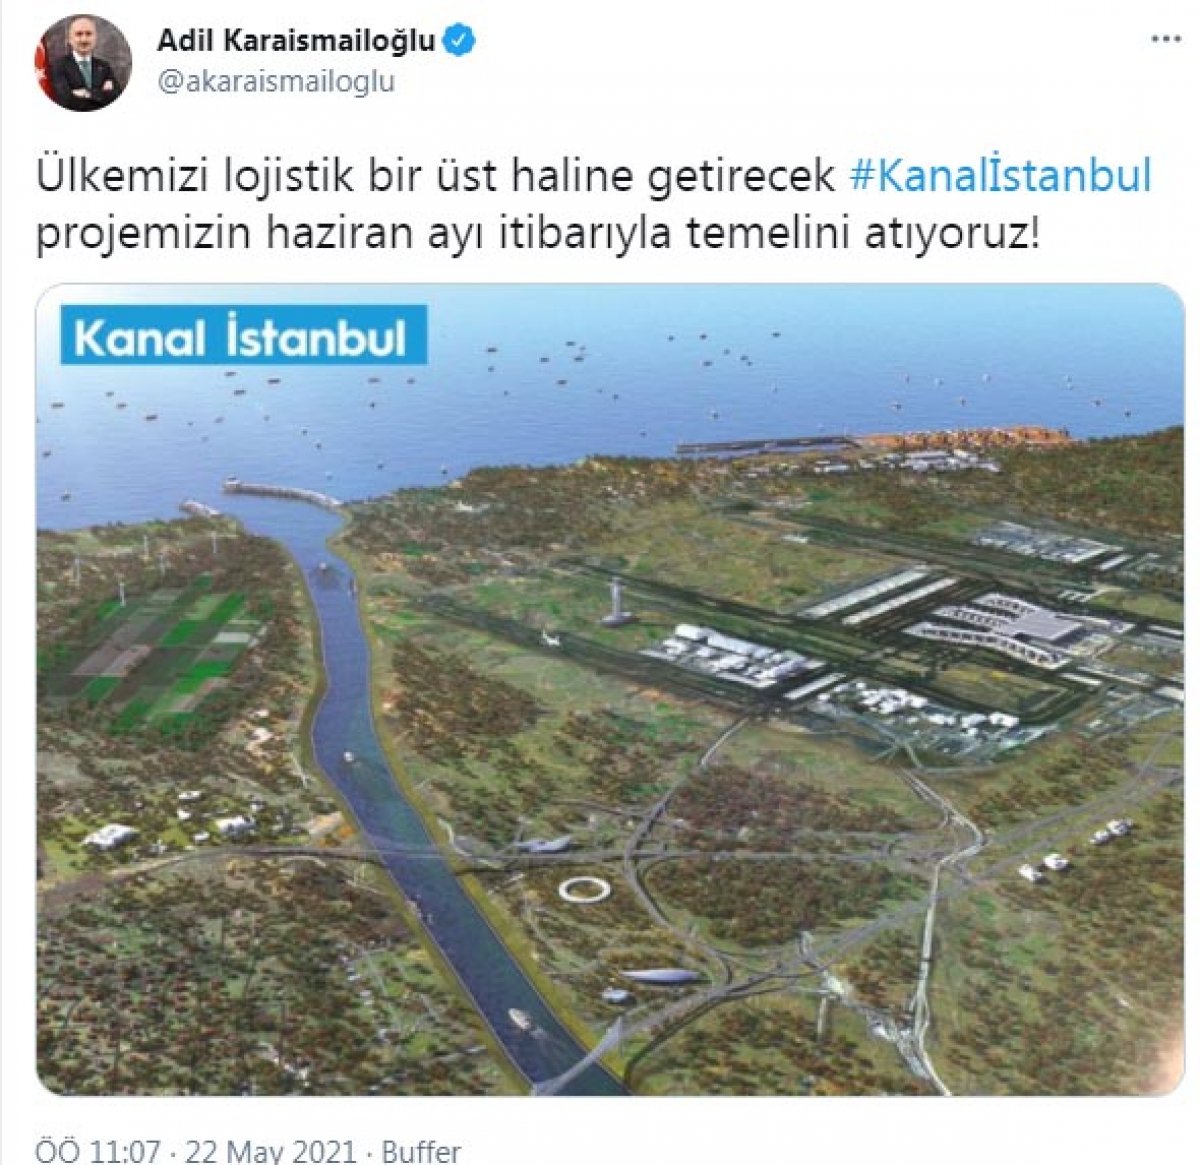 Adil Karaismailoğlu: Kanal İstanbul un temeli haziran ayında atılıyor #1